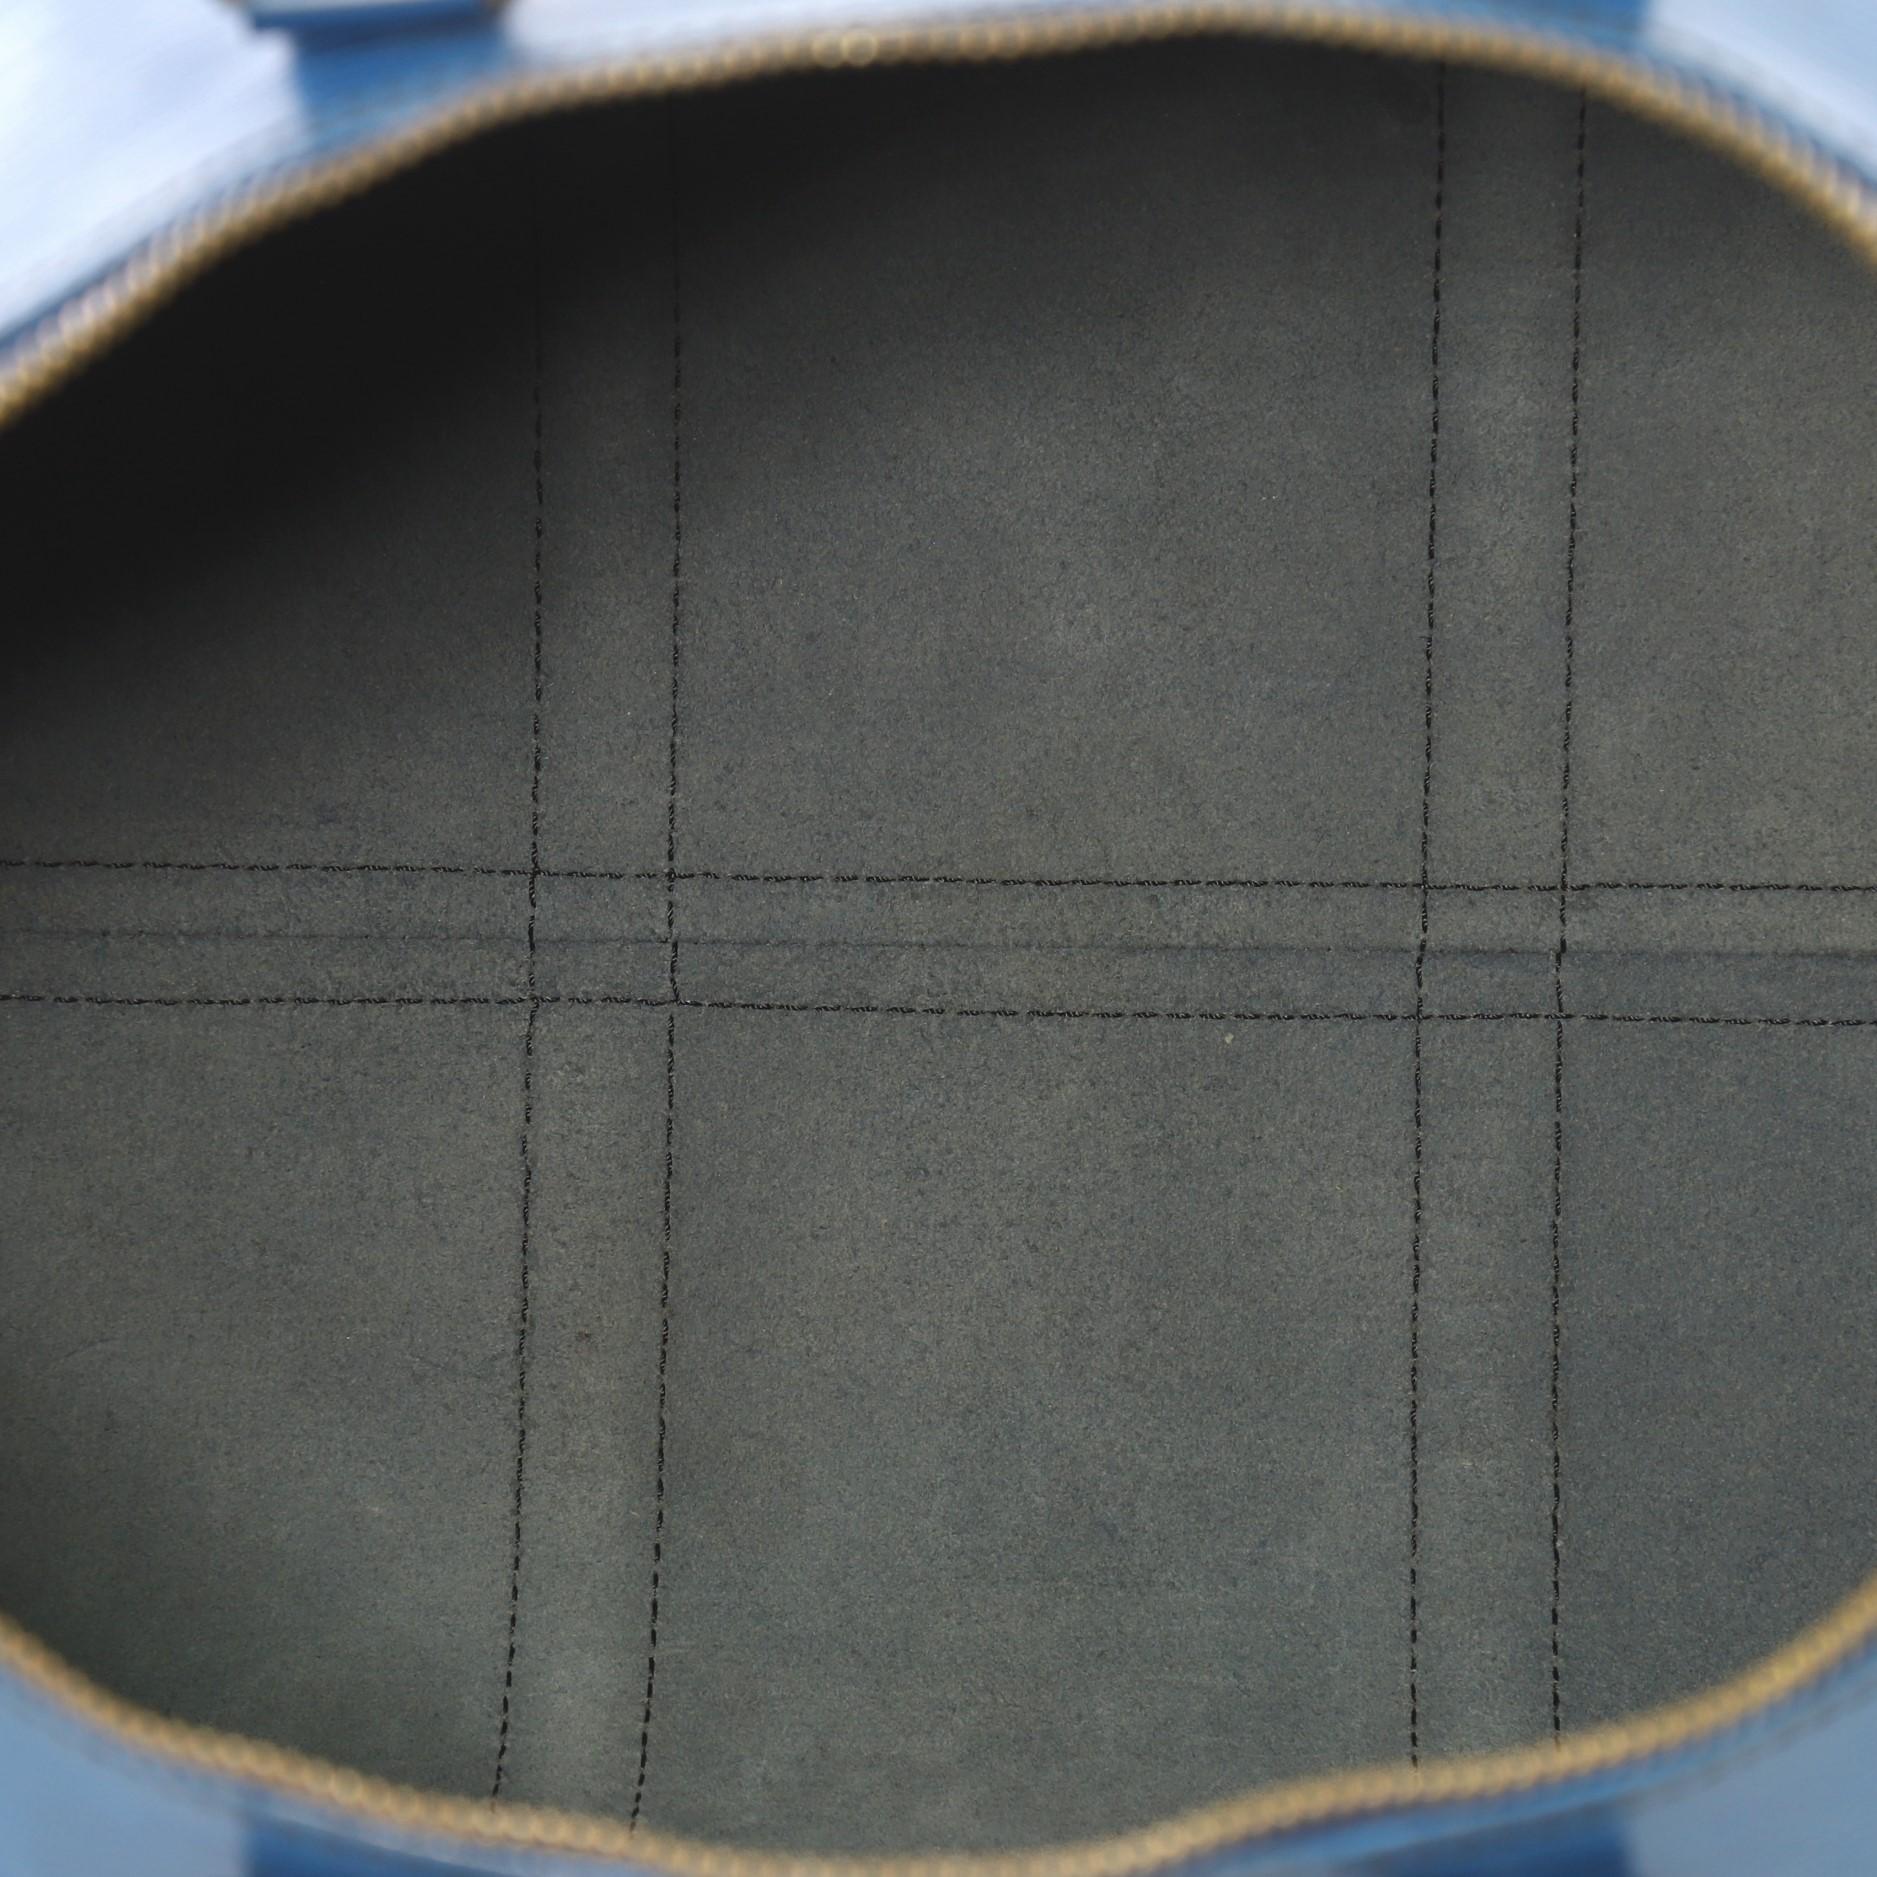 Louis Vuitton Keepall Bag Epi Leather 45 4